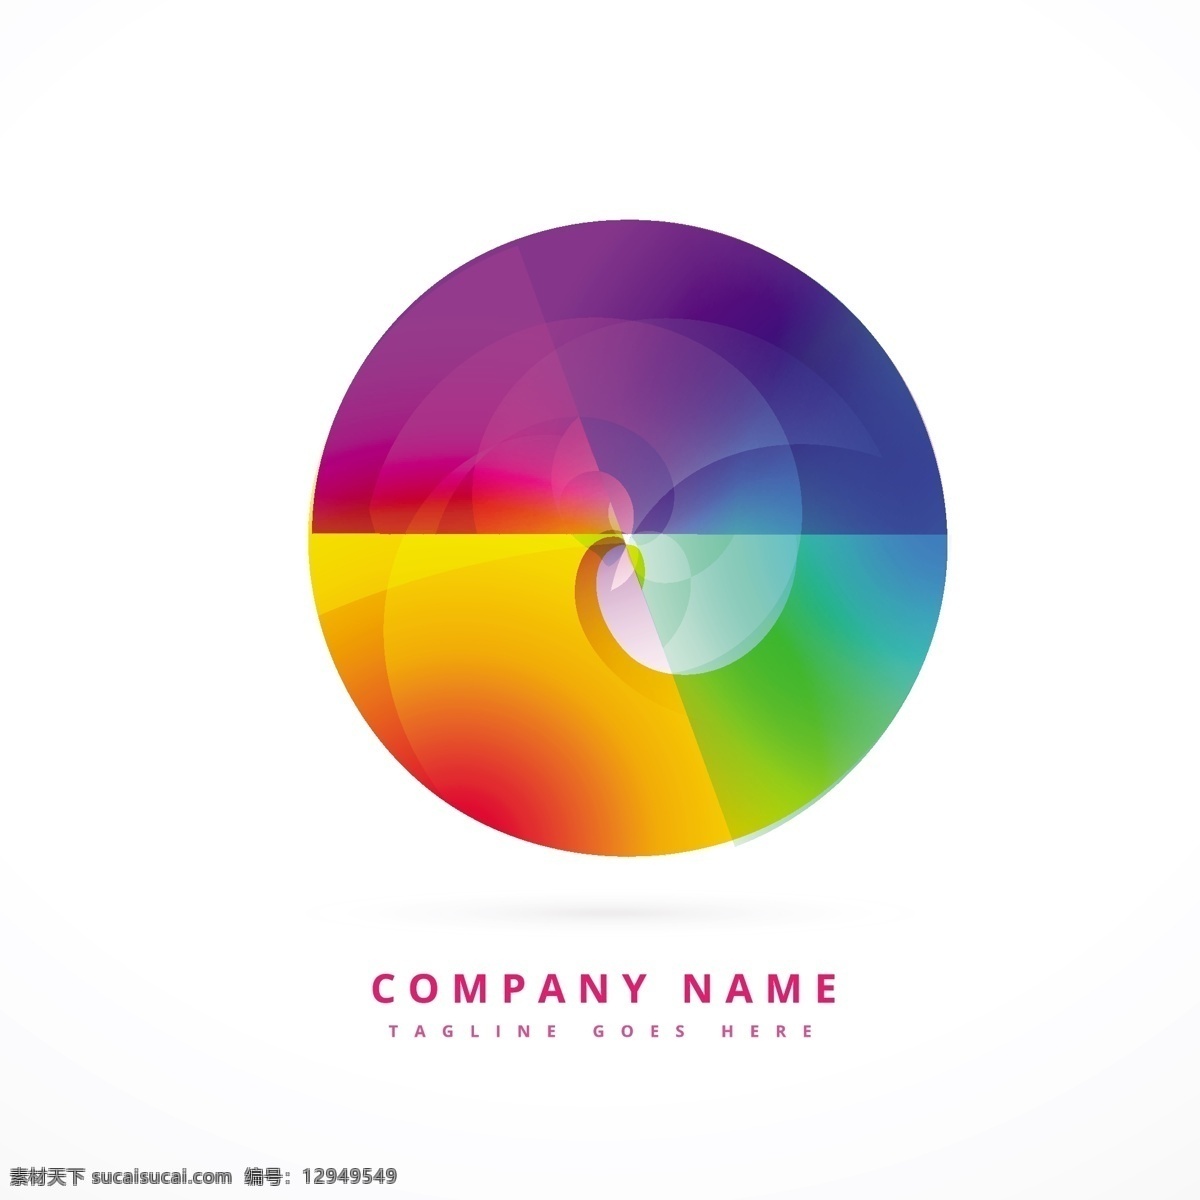 丰富多彩 圆形 标志 标识 商业 抽象 图标 模板 标志设计 营销 颜色 艺术 促销 广告 企业 公司 品牌 创意 抽象的标志 白色